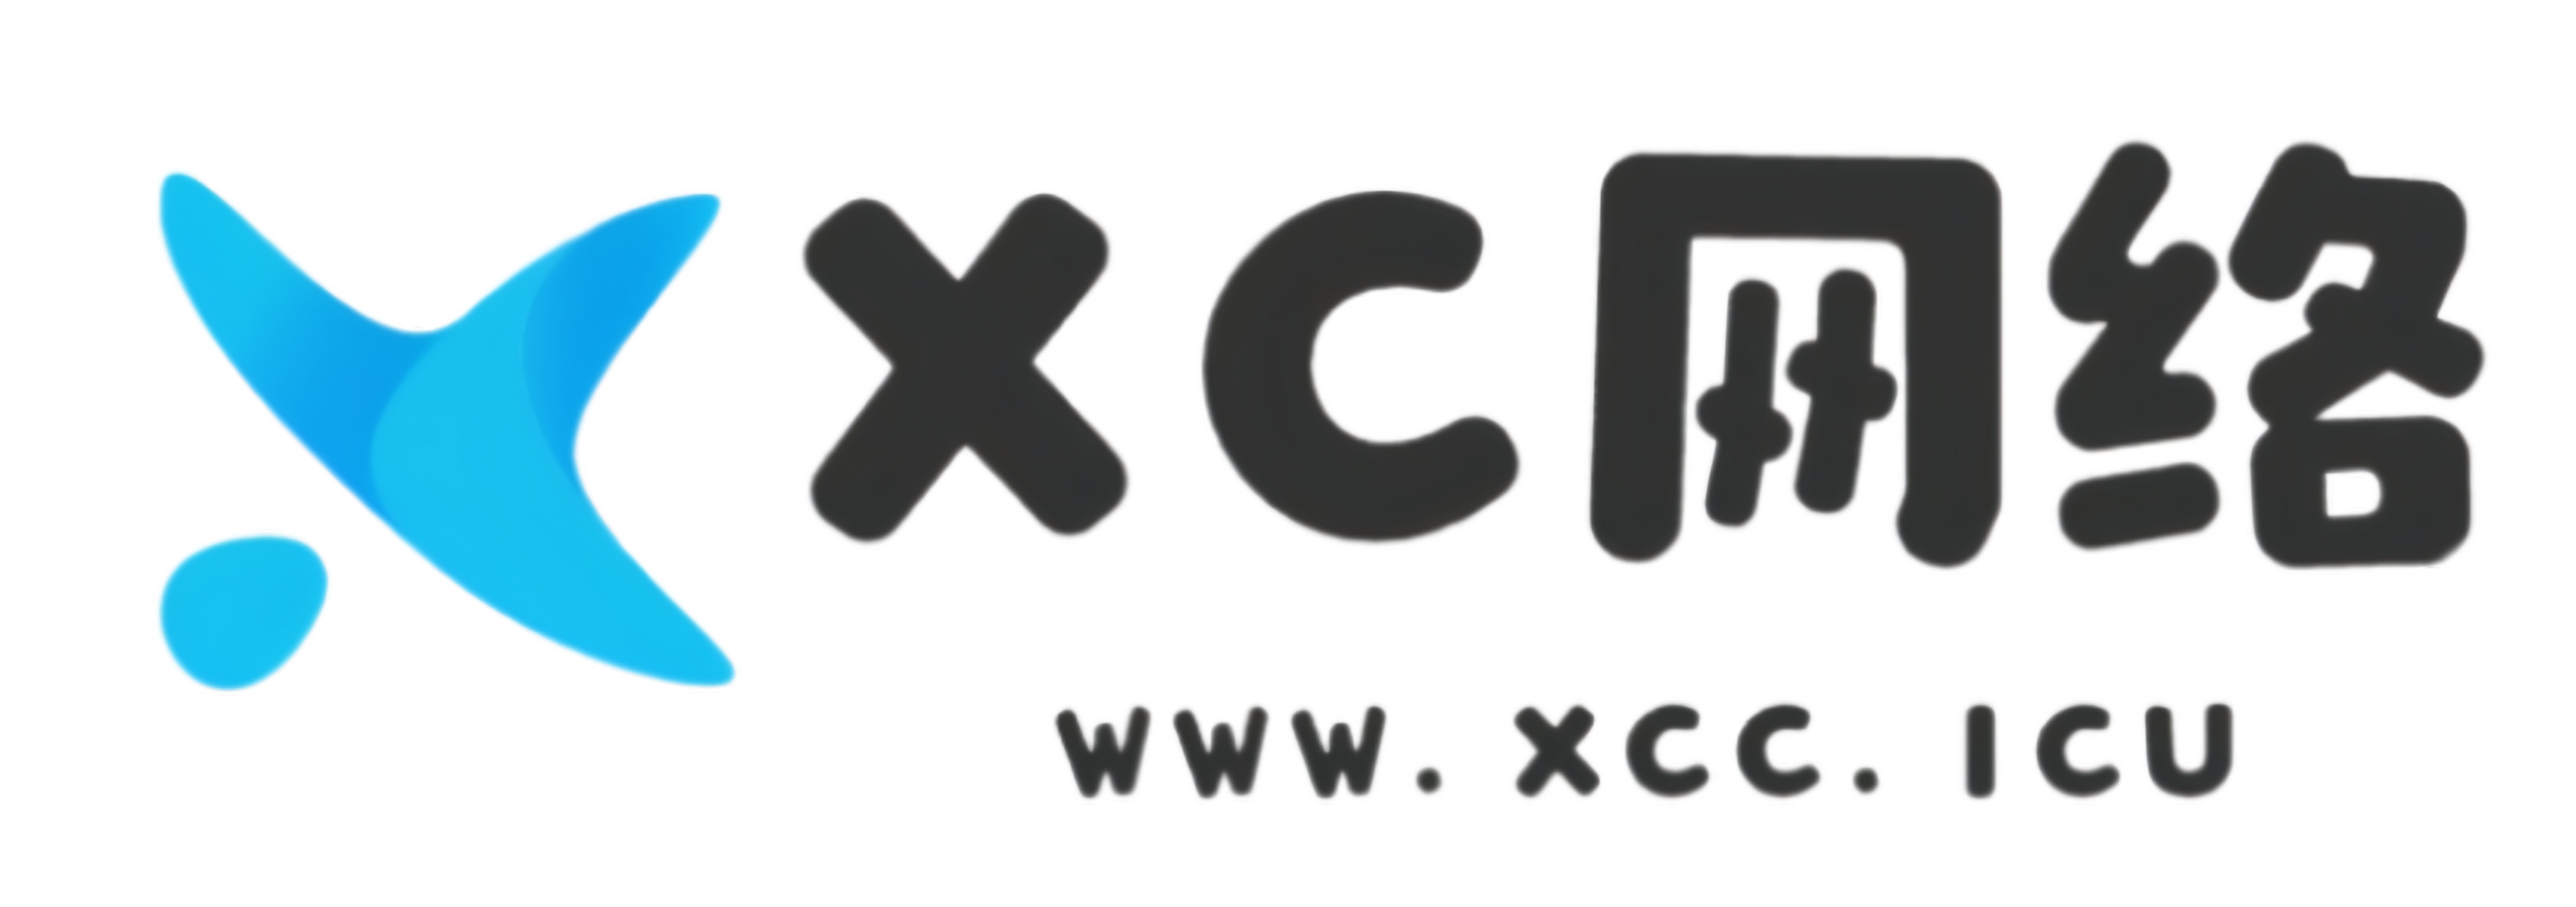 XC权益数卡-特价会员充值-电子卡券采购平台